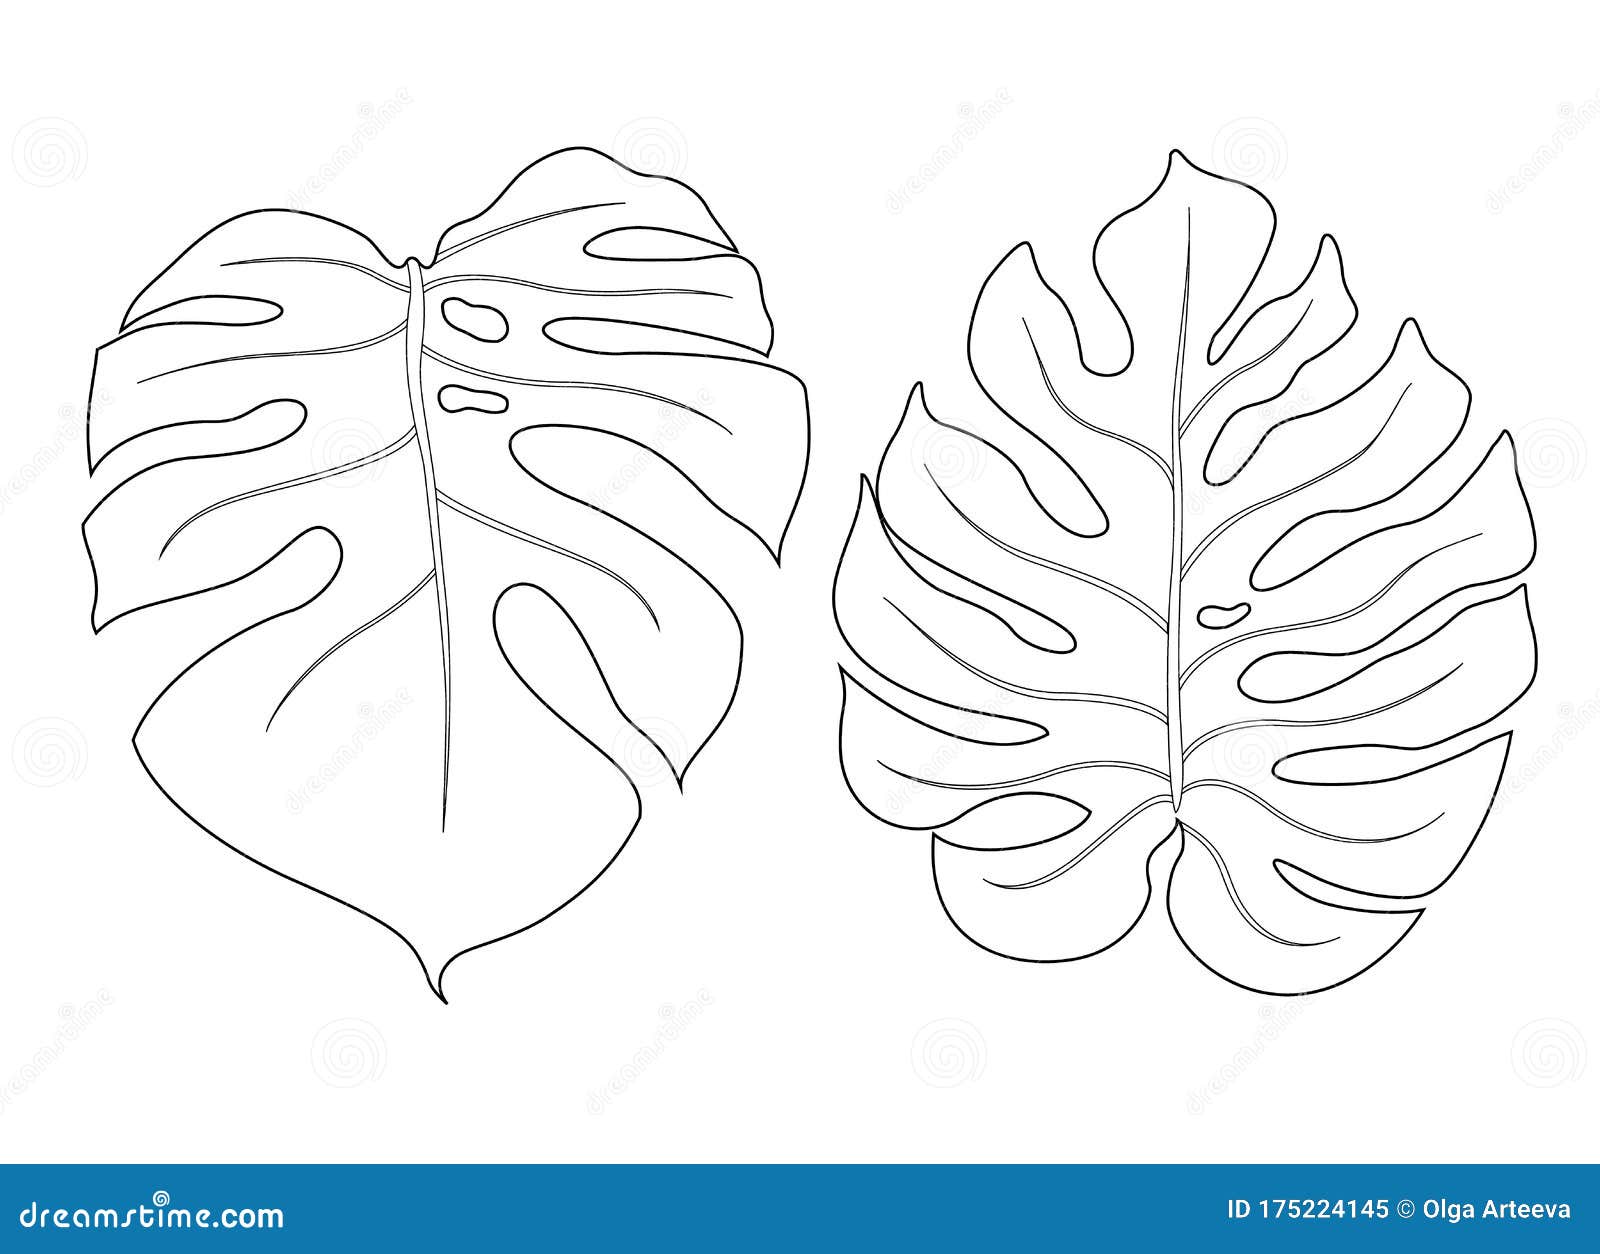 monstera leaf outline  